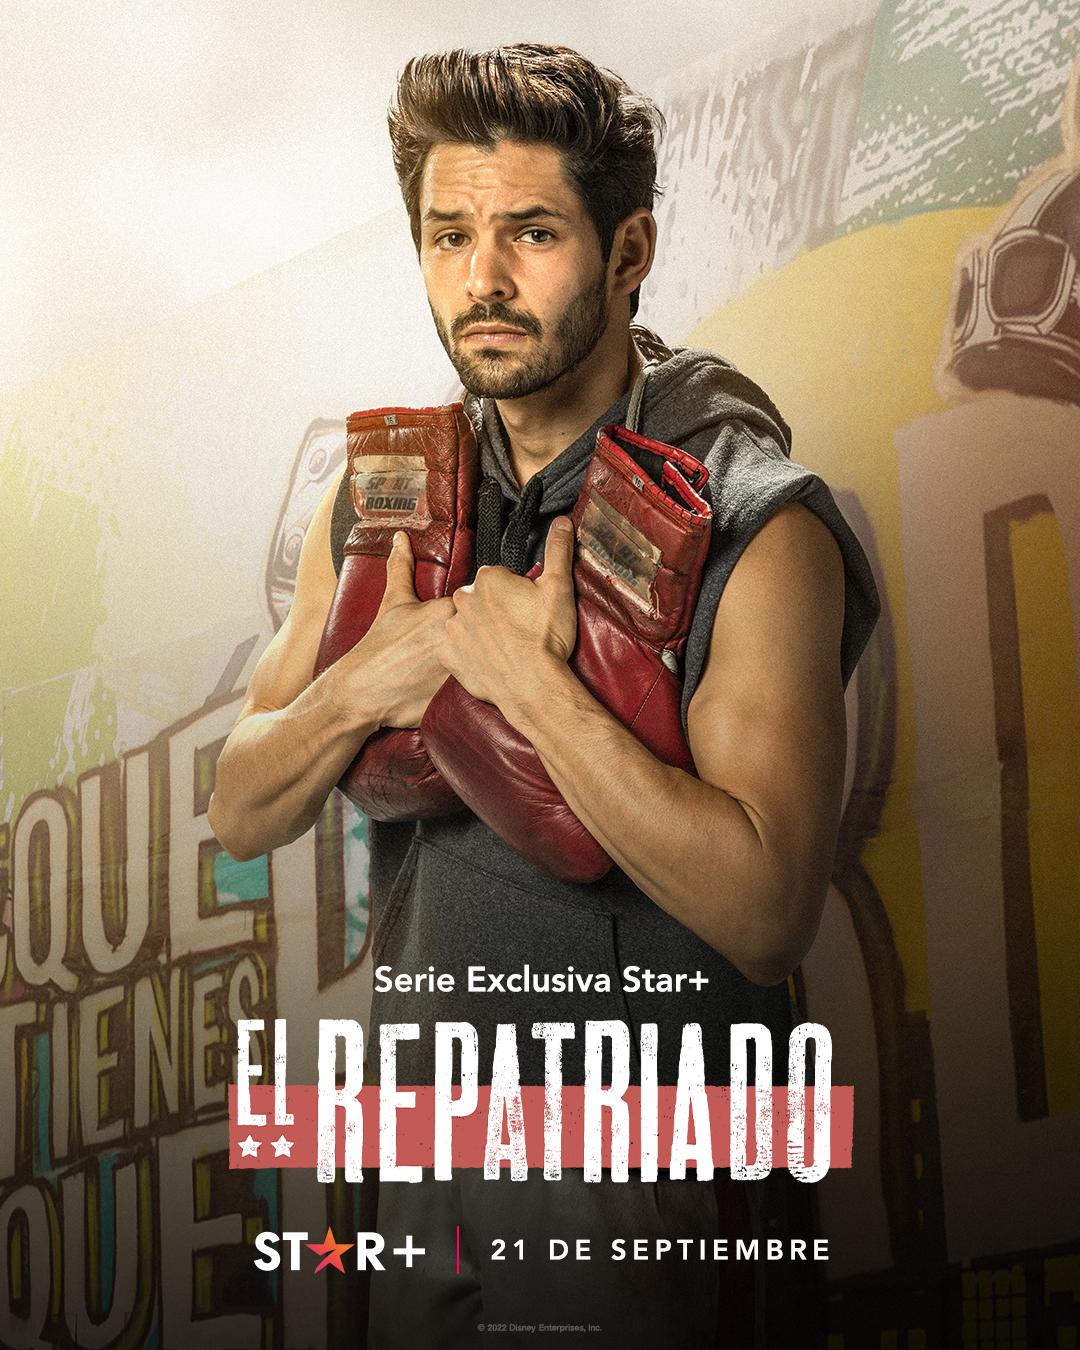 TV ratings for Repatriated (El Repatriado) in Australia. Star+ TV series